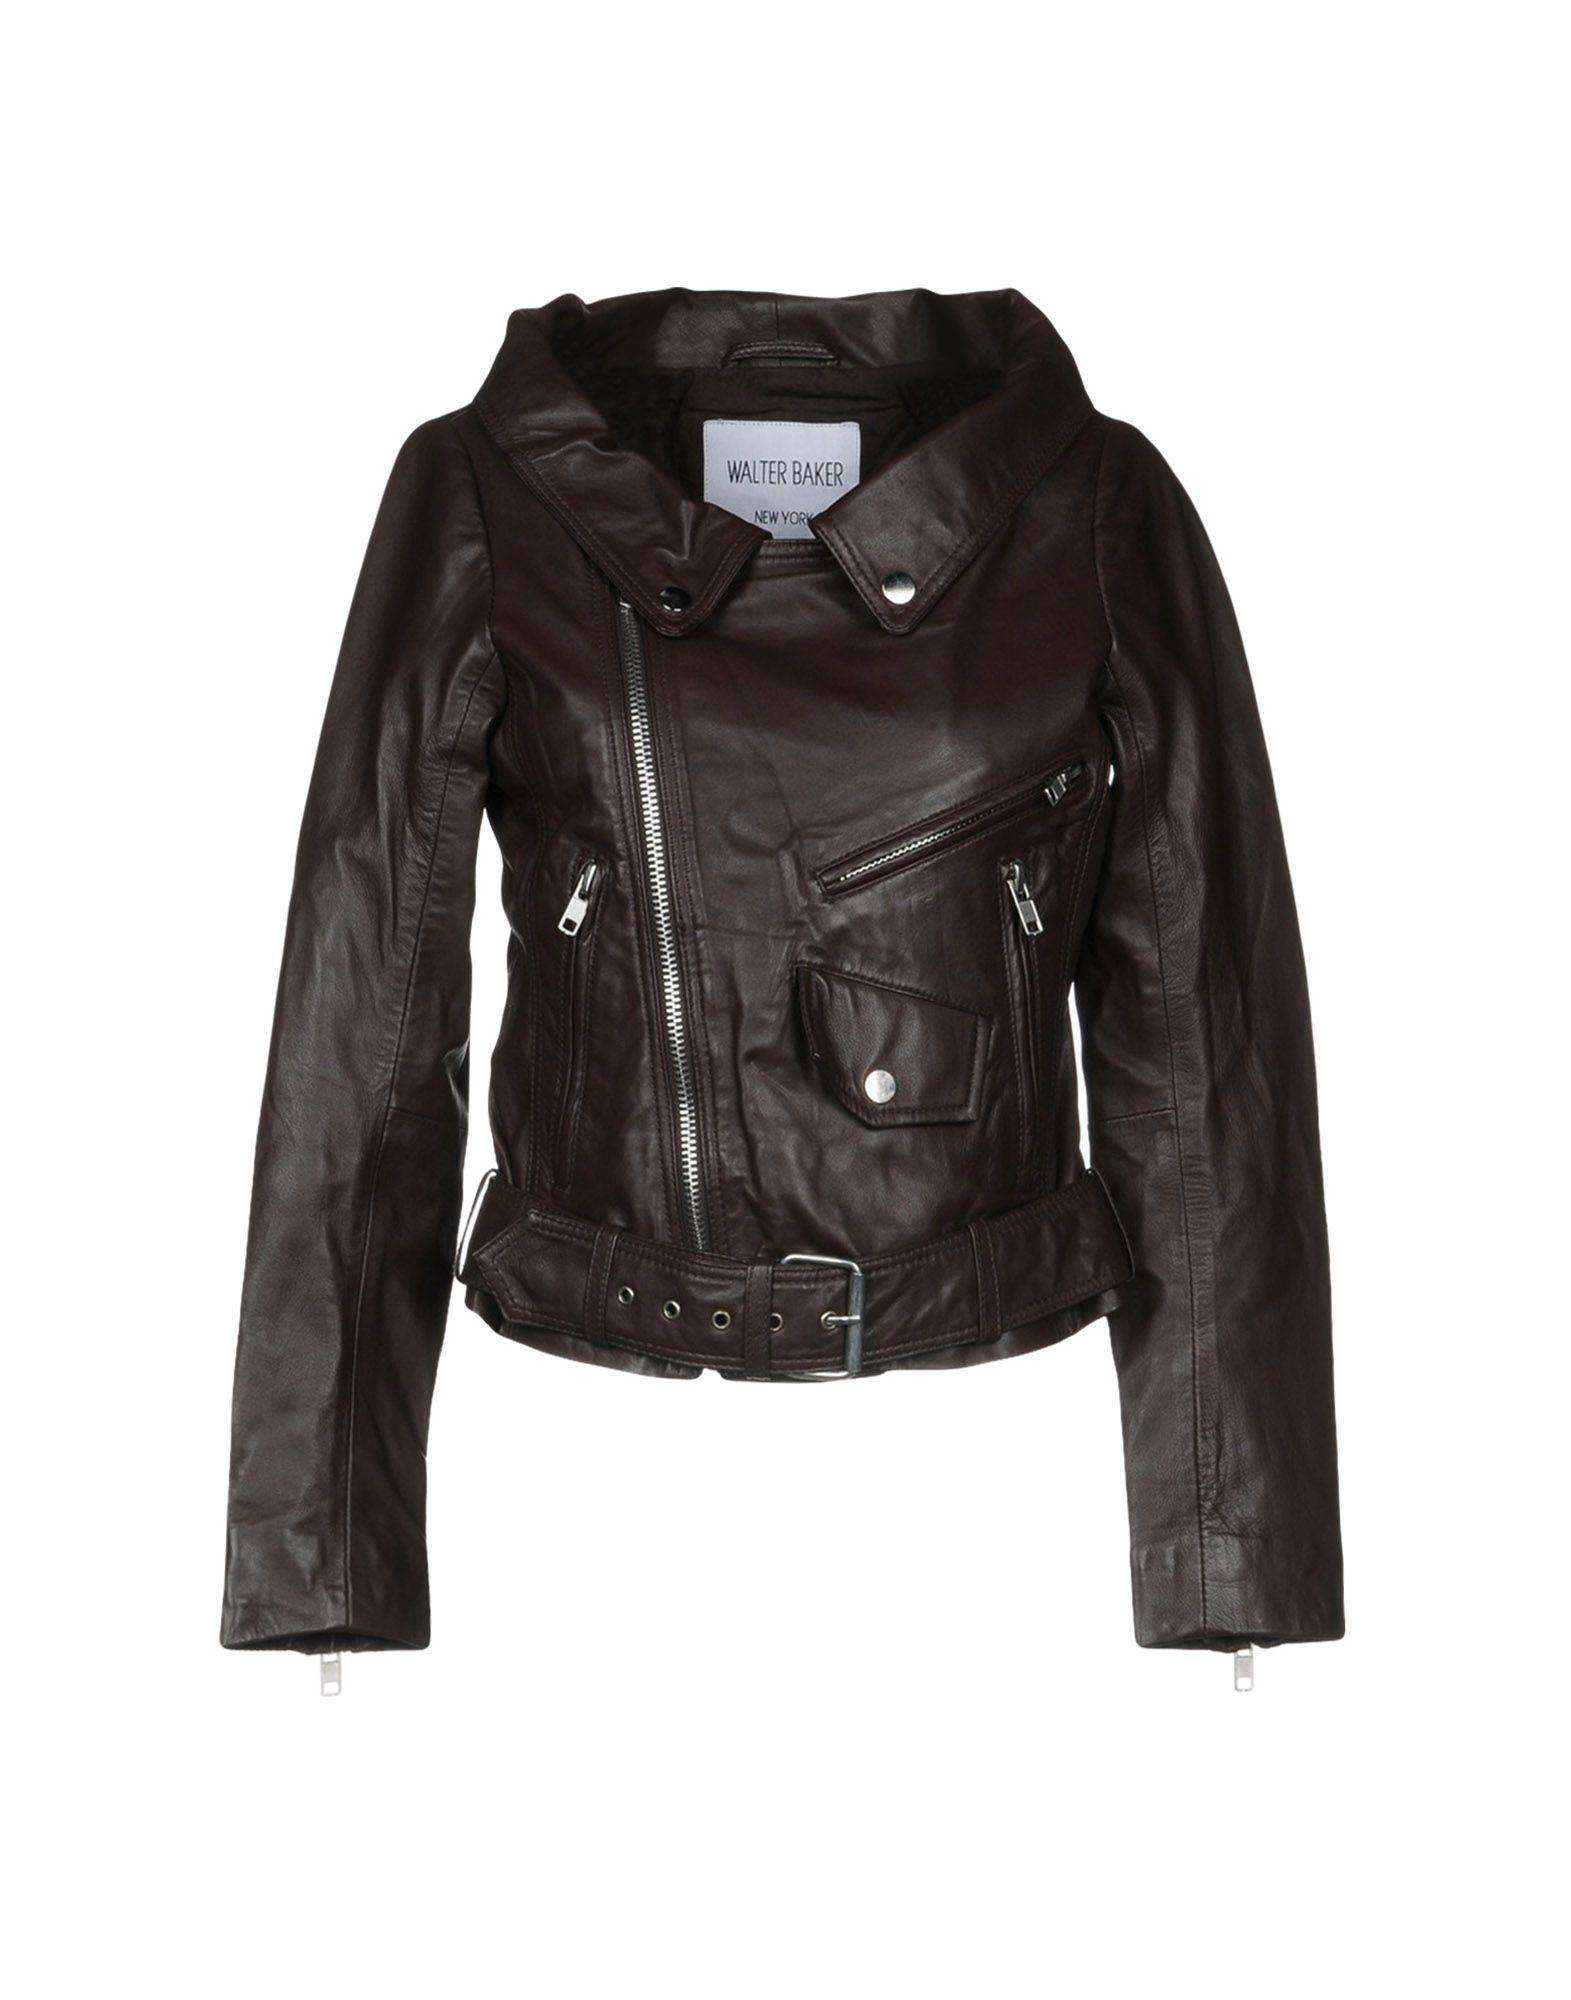 Walter Baker Biker Jacket In Dark Brown | ModeSens